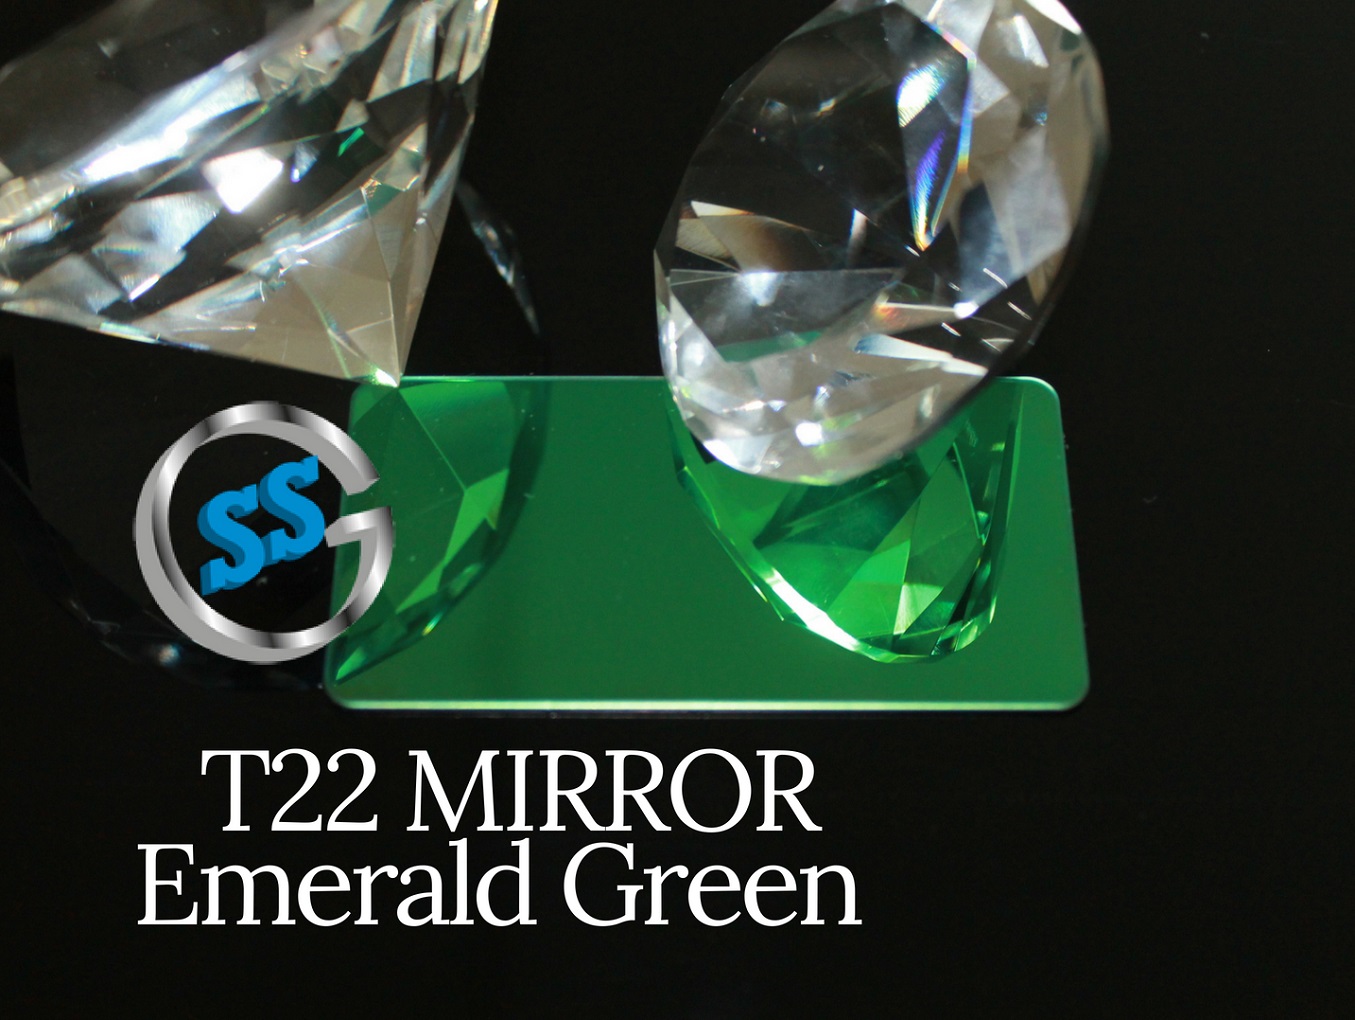 Inox T22 Titanium Emerald Green Mirror, inox colorato titanio green a specchio